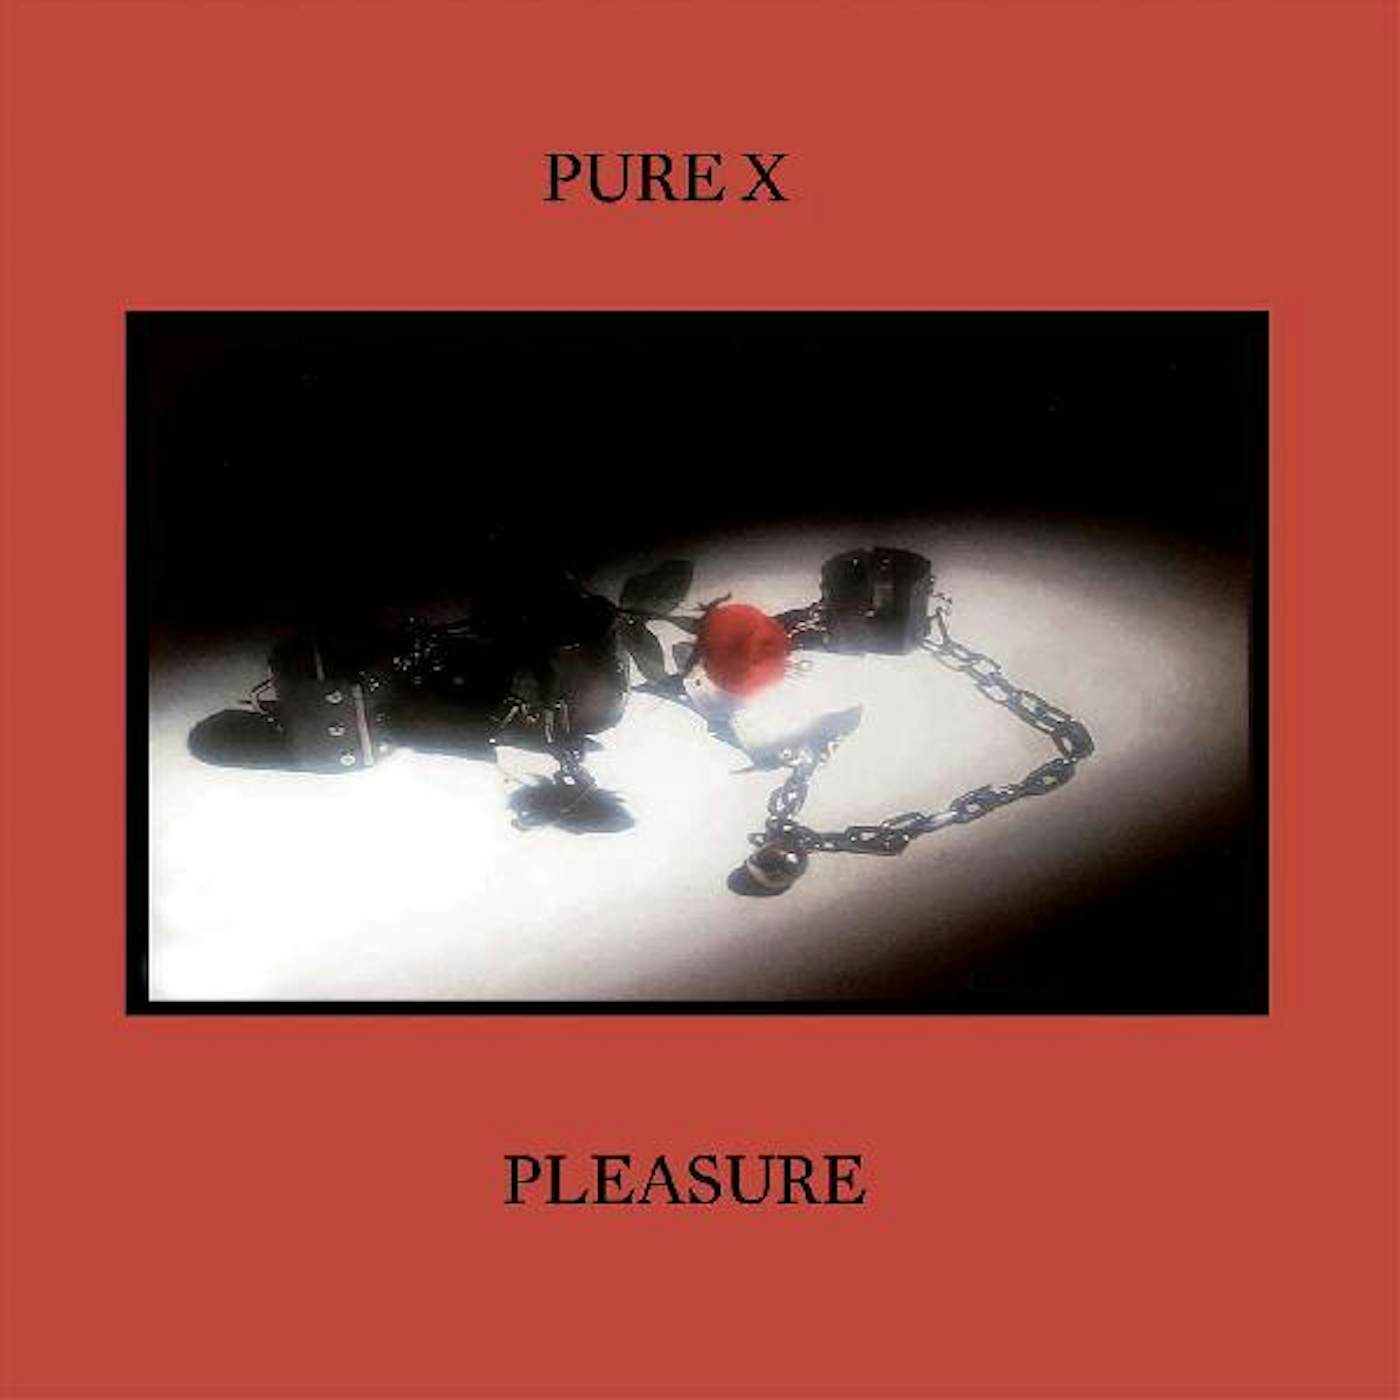 Pure X Pleasure Vinyl Record